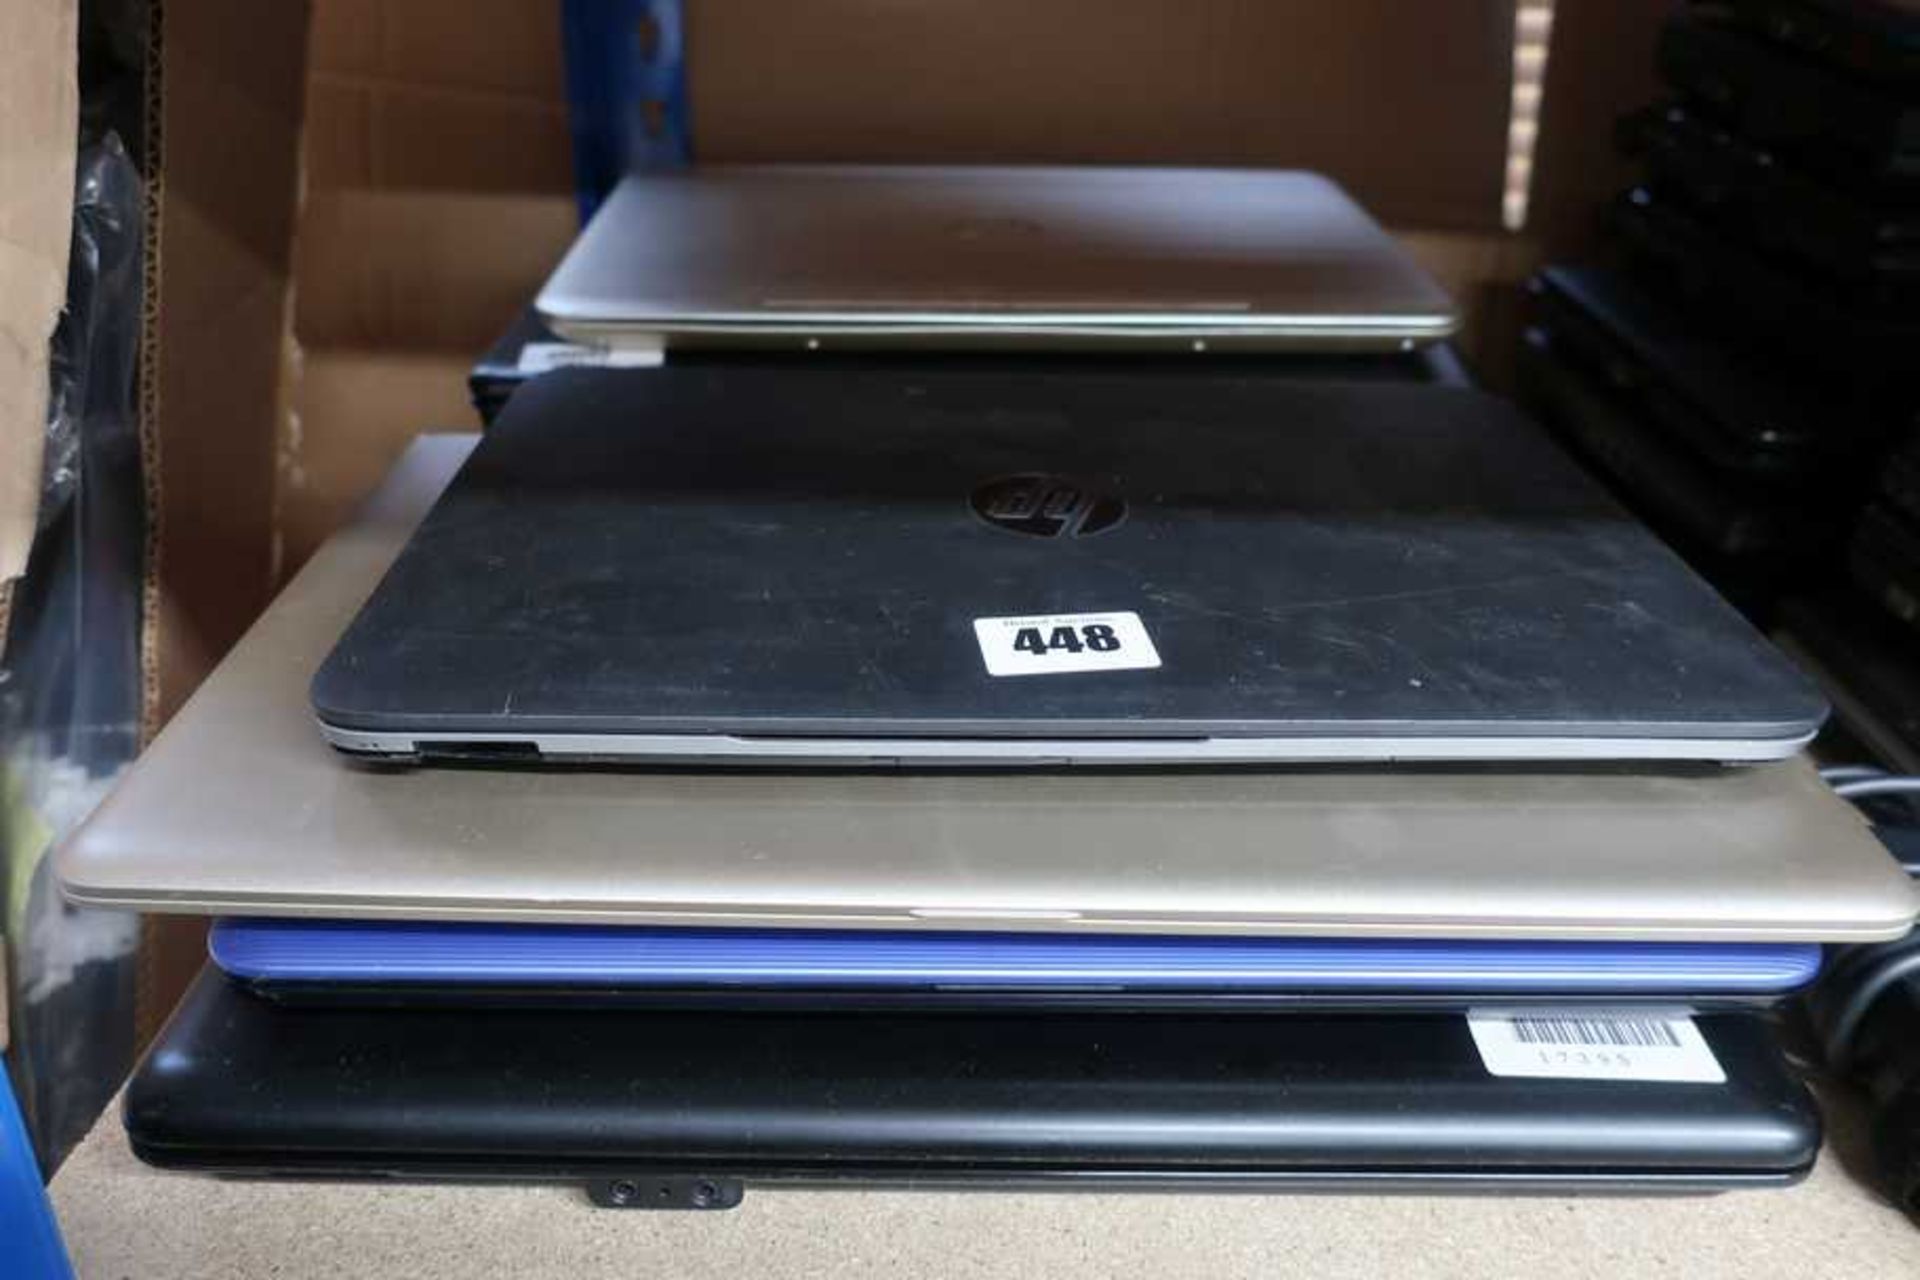 Eight pre-owed HP Laptops sold for parts: 1 x Pavilion x360, 1 x 14-am017la, 1 x Pavilion 14-